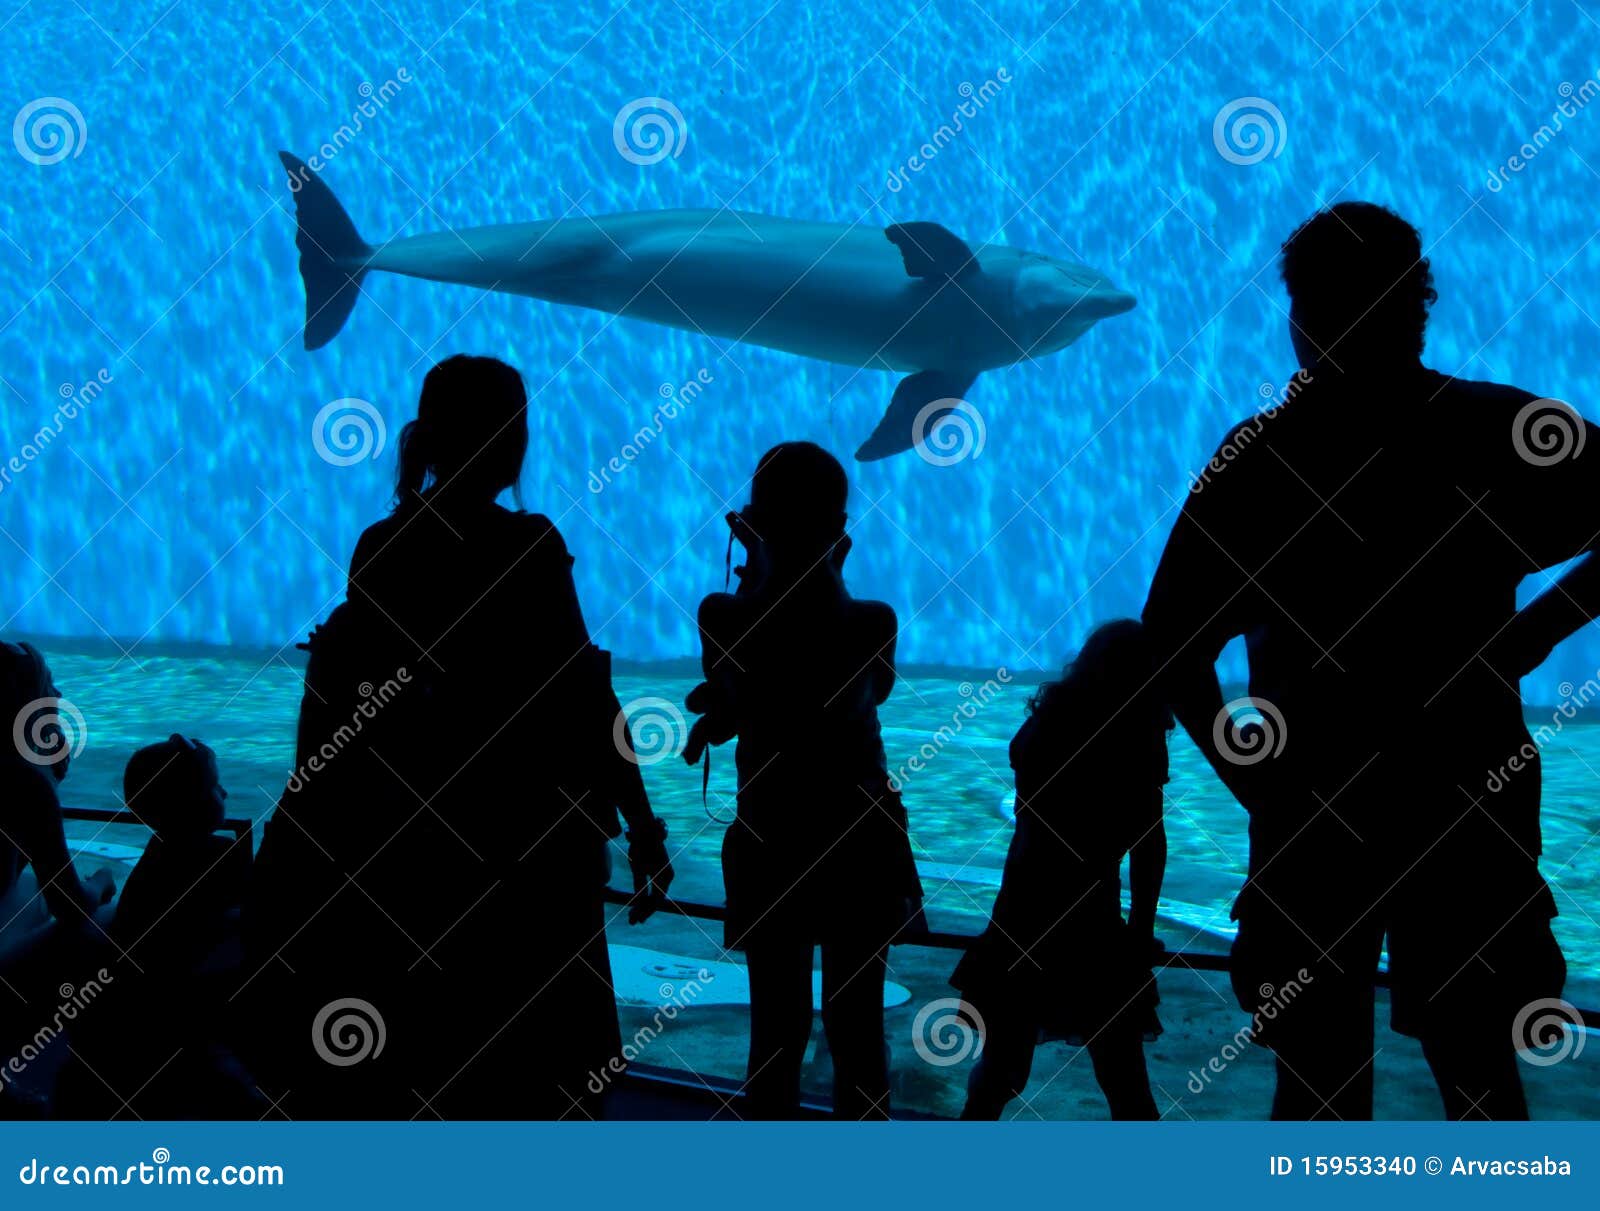 aquarium spectator silhouettes